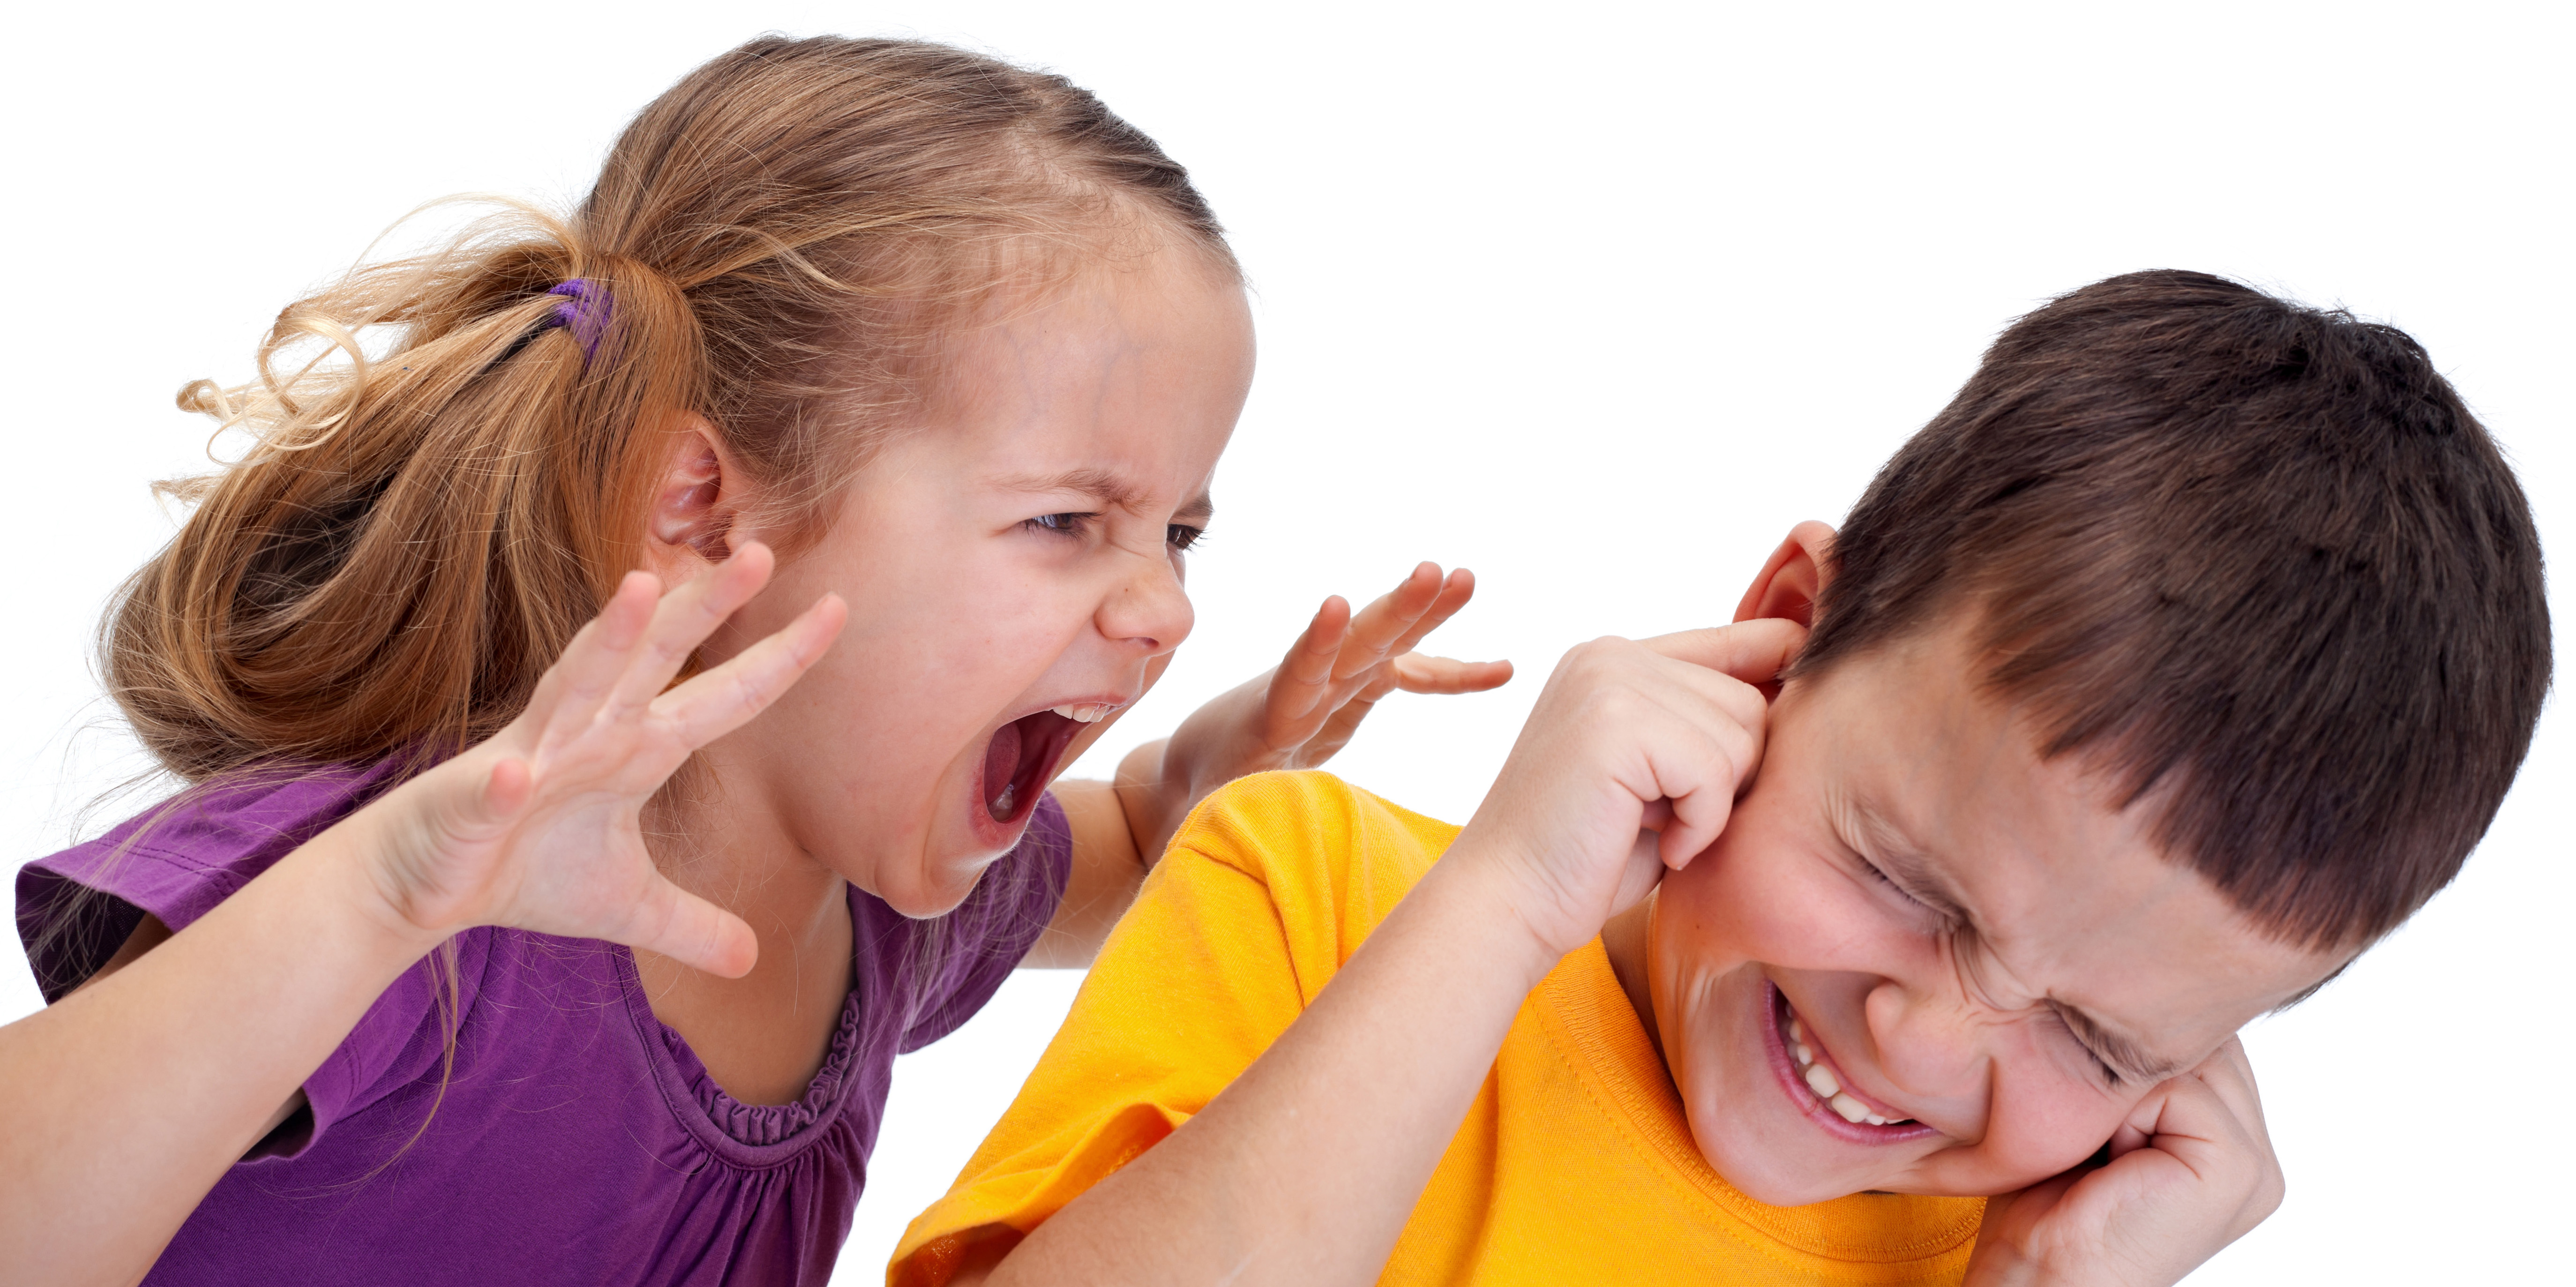 Эмоциональное поведение в группе. Агрессивный ребенок. "Дети и стресс". Нервный ребенок. Детские эмоции.